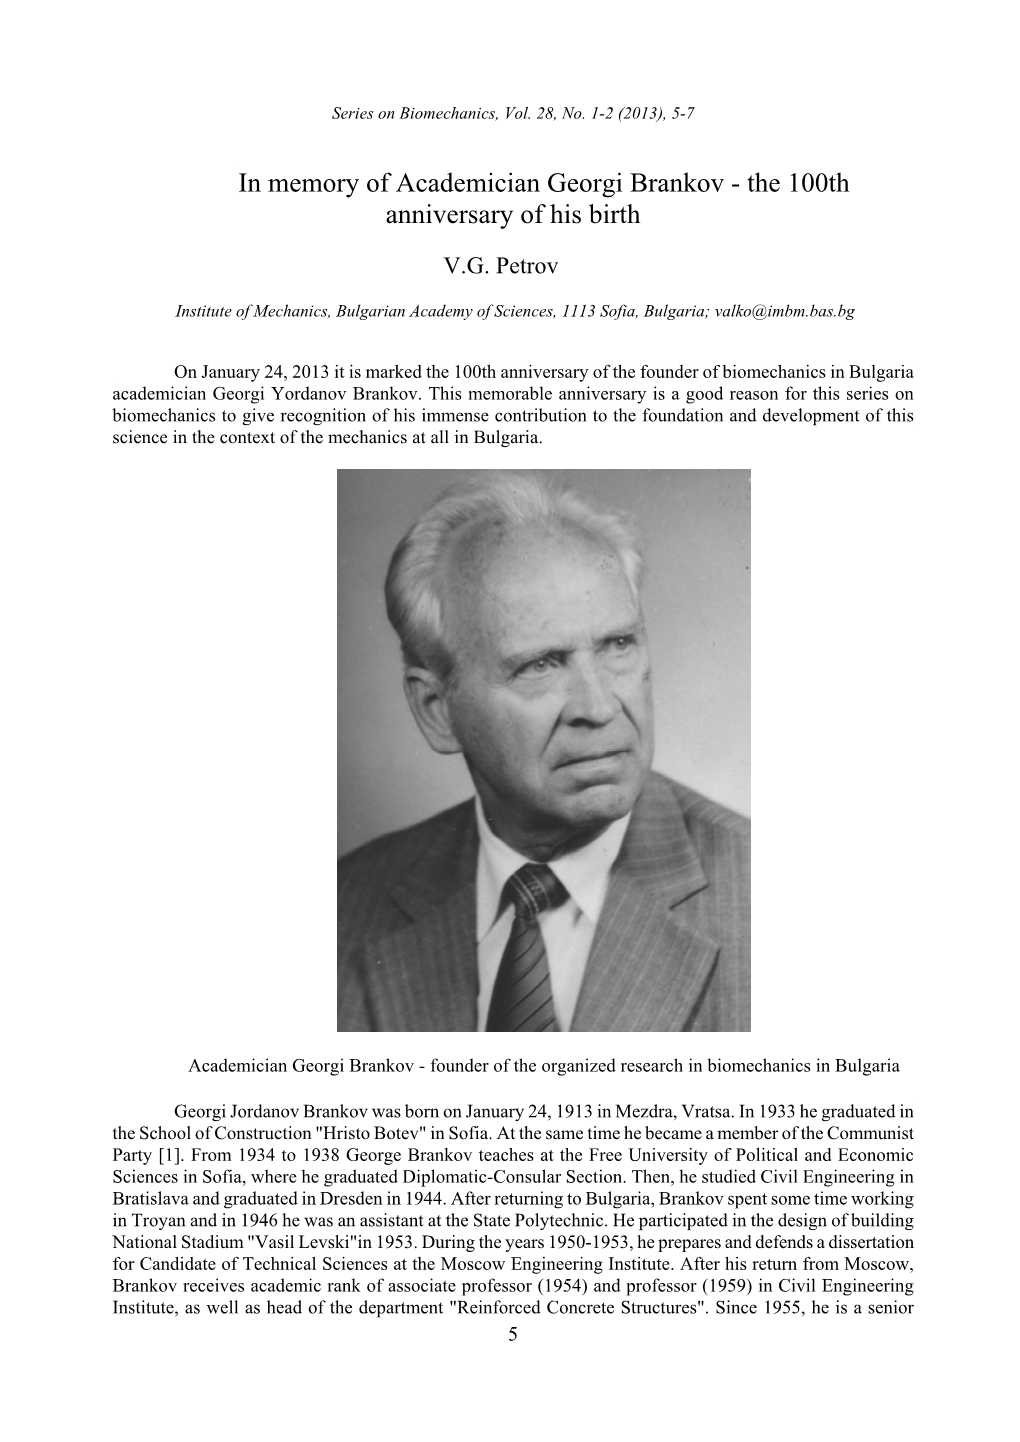 In Memory of Academician Georgi Brankov - the 100Th Anniversary of His Birth